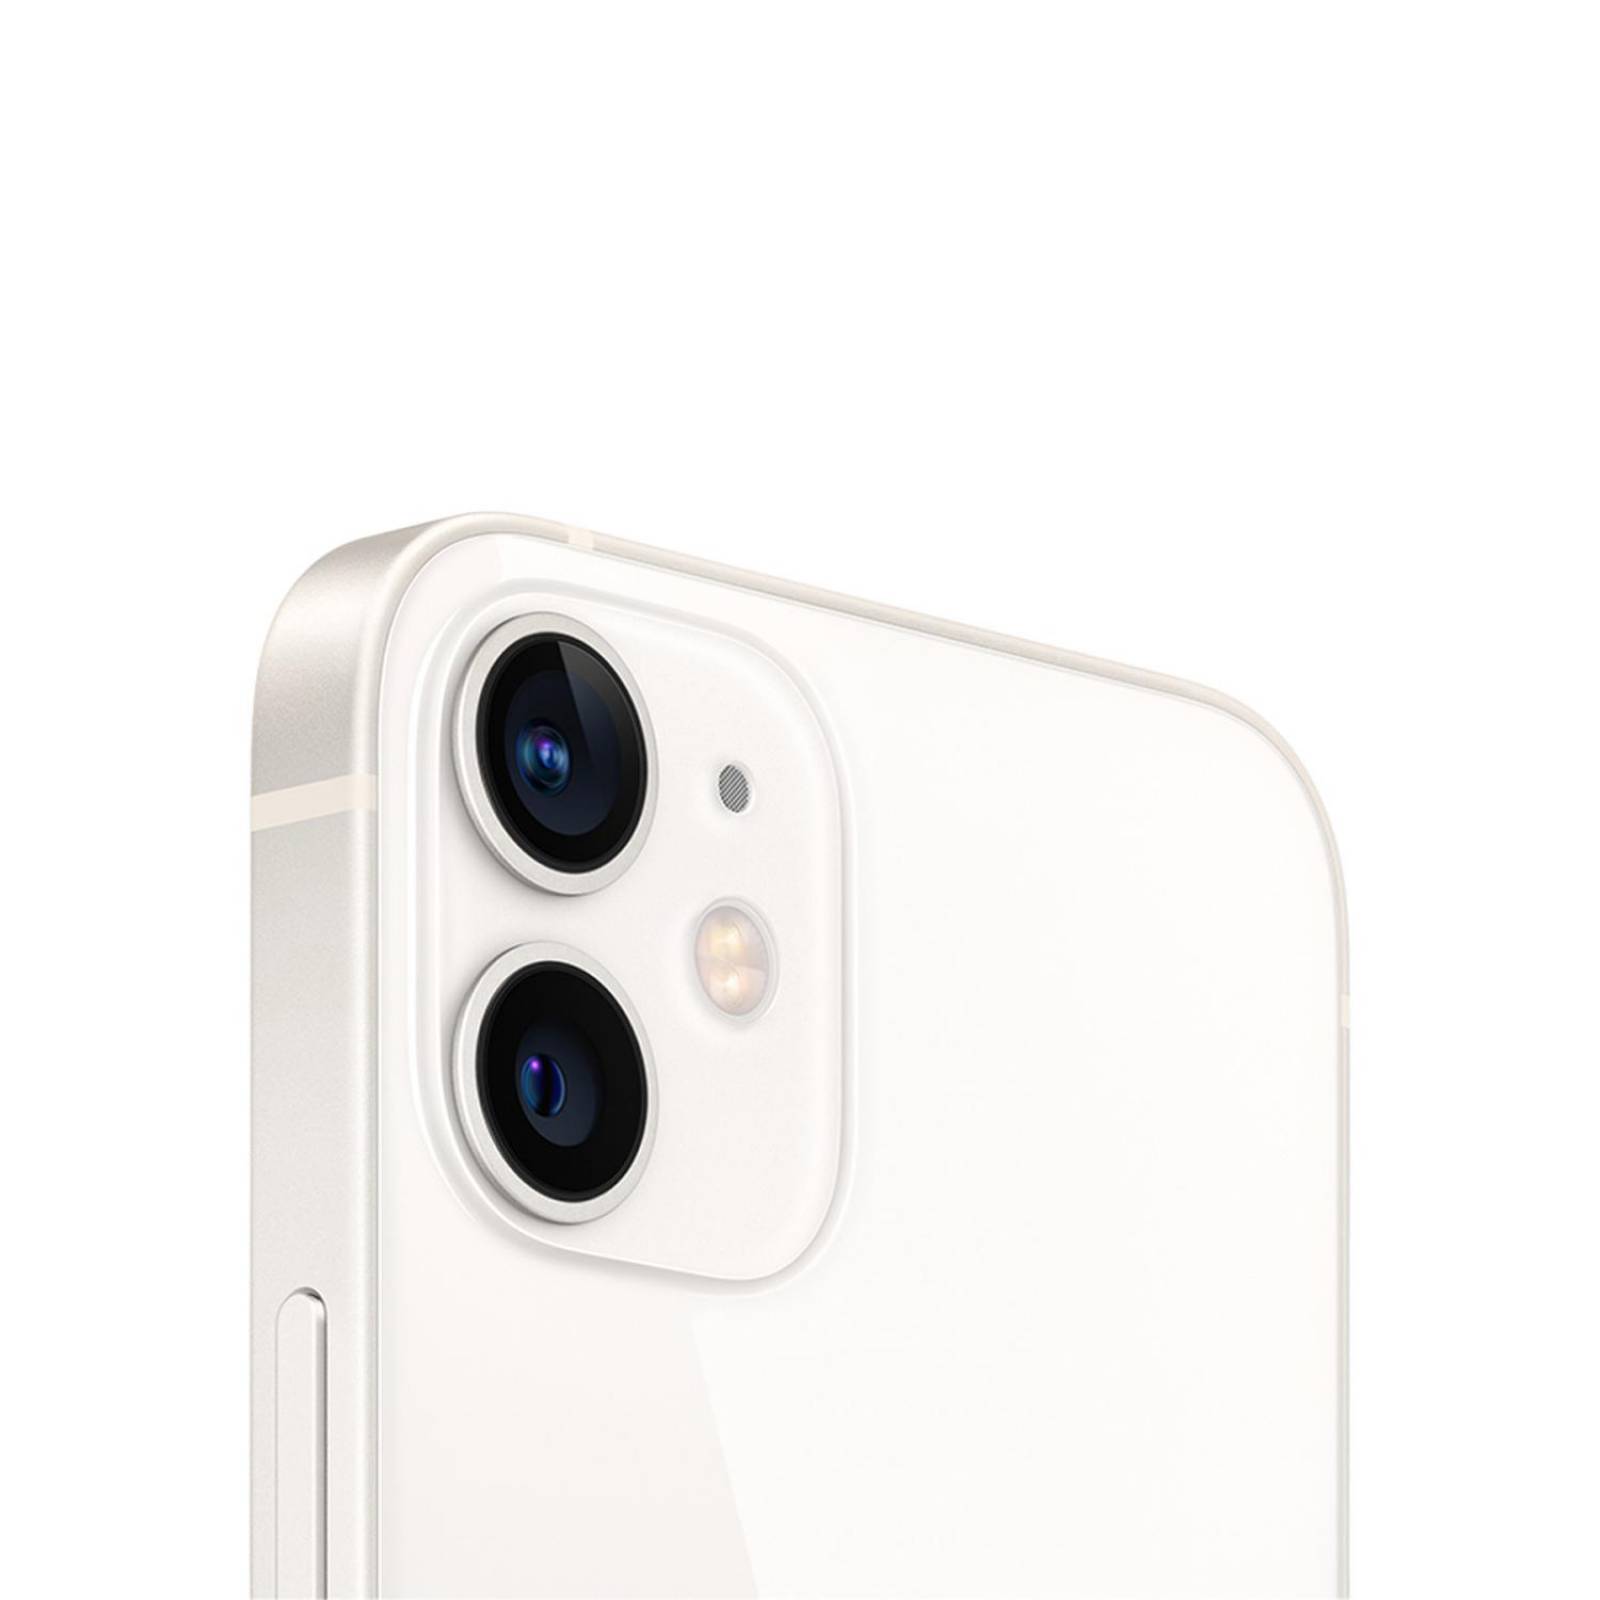 iPhone 12 mini de 128 GB reacondicionado - Blanco (Libre) - Apple (ES)